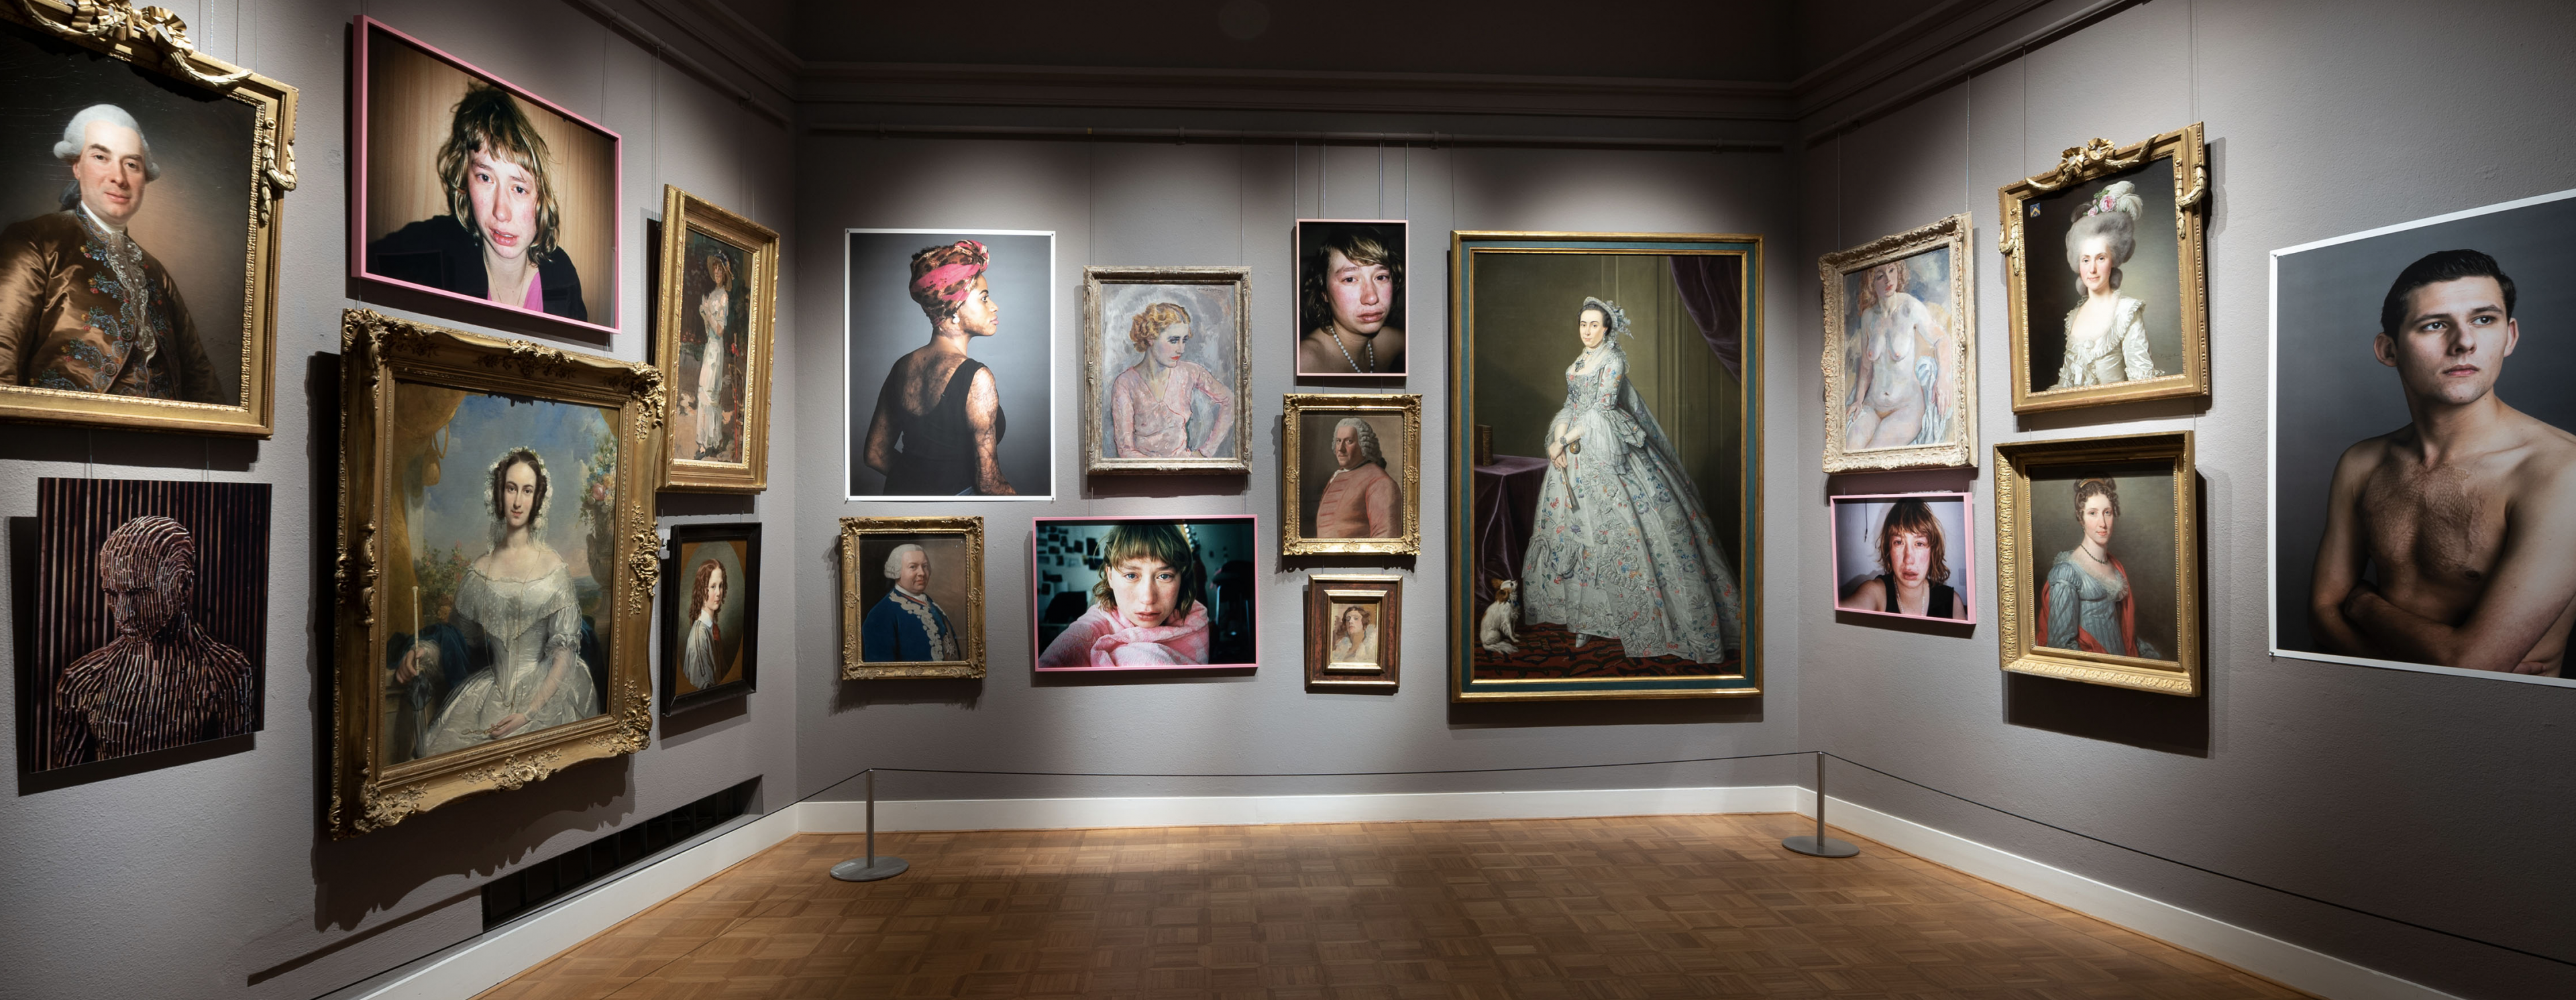 Un buon esempio di una collezione d'arte di "ritratti" contemporanei e classici nel Rijksmuseum van Twente